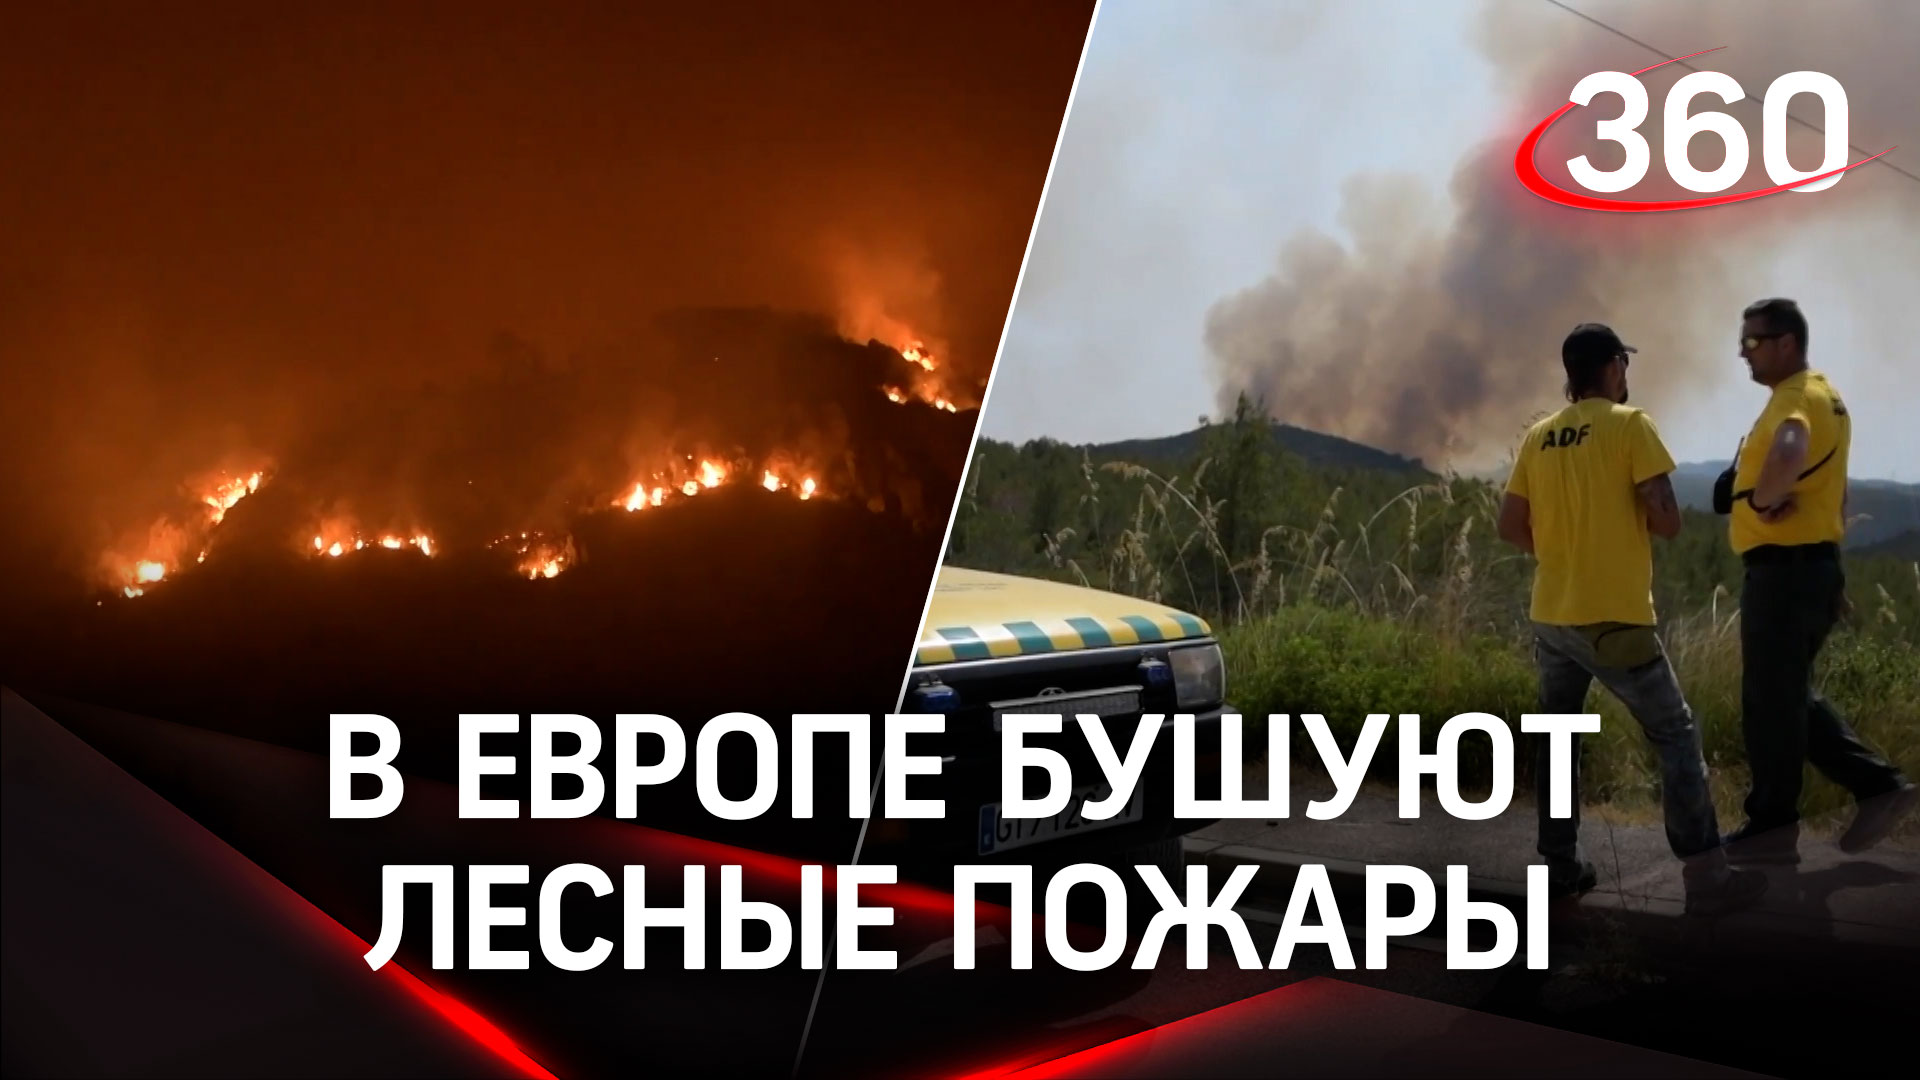 Аномальная жара выжигает Европу. С лесными пожарами в Испании борется армия